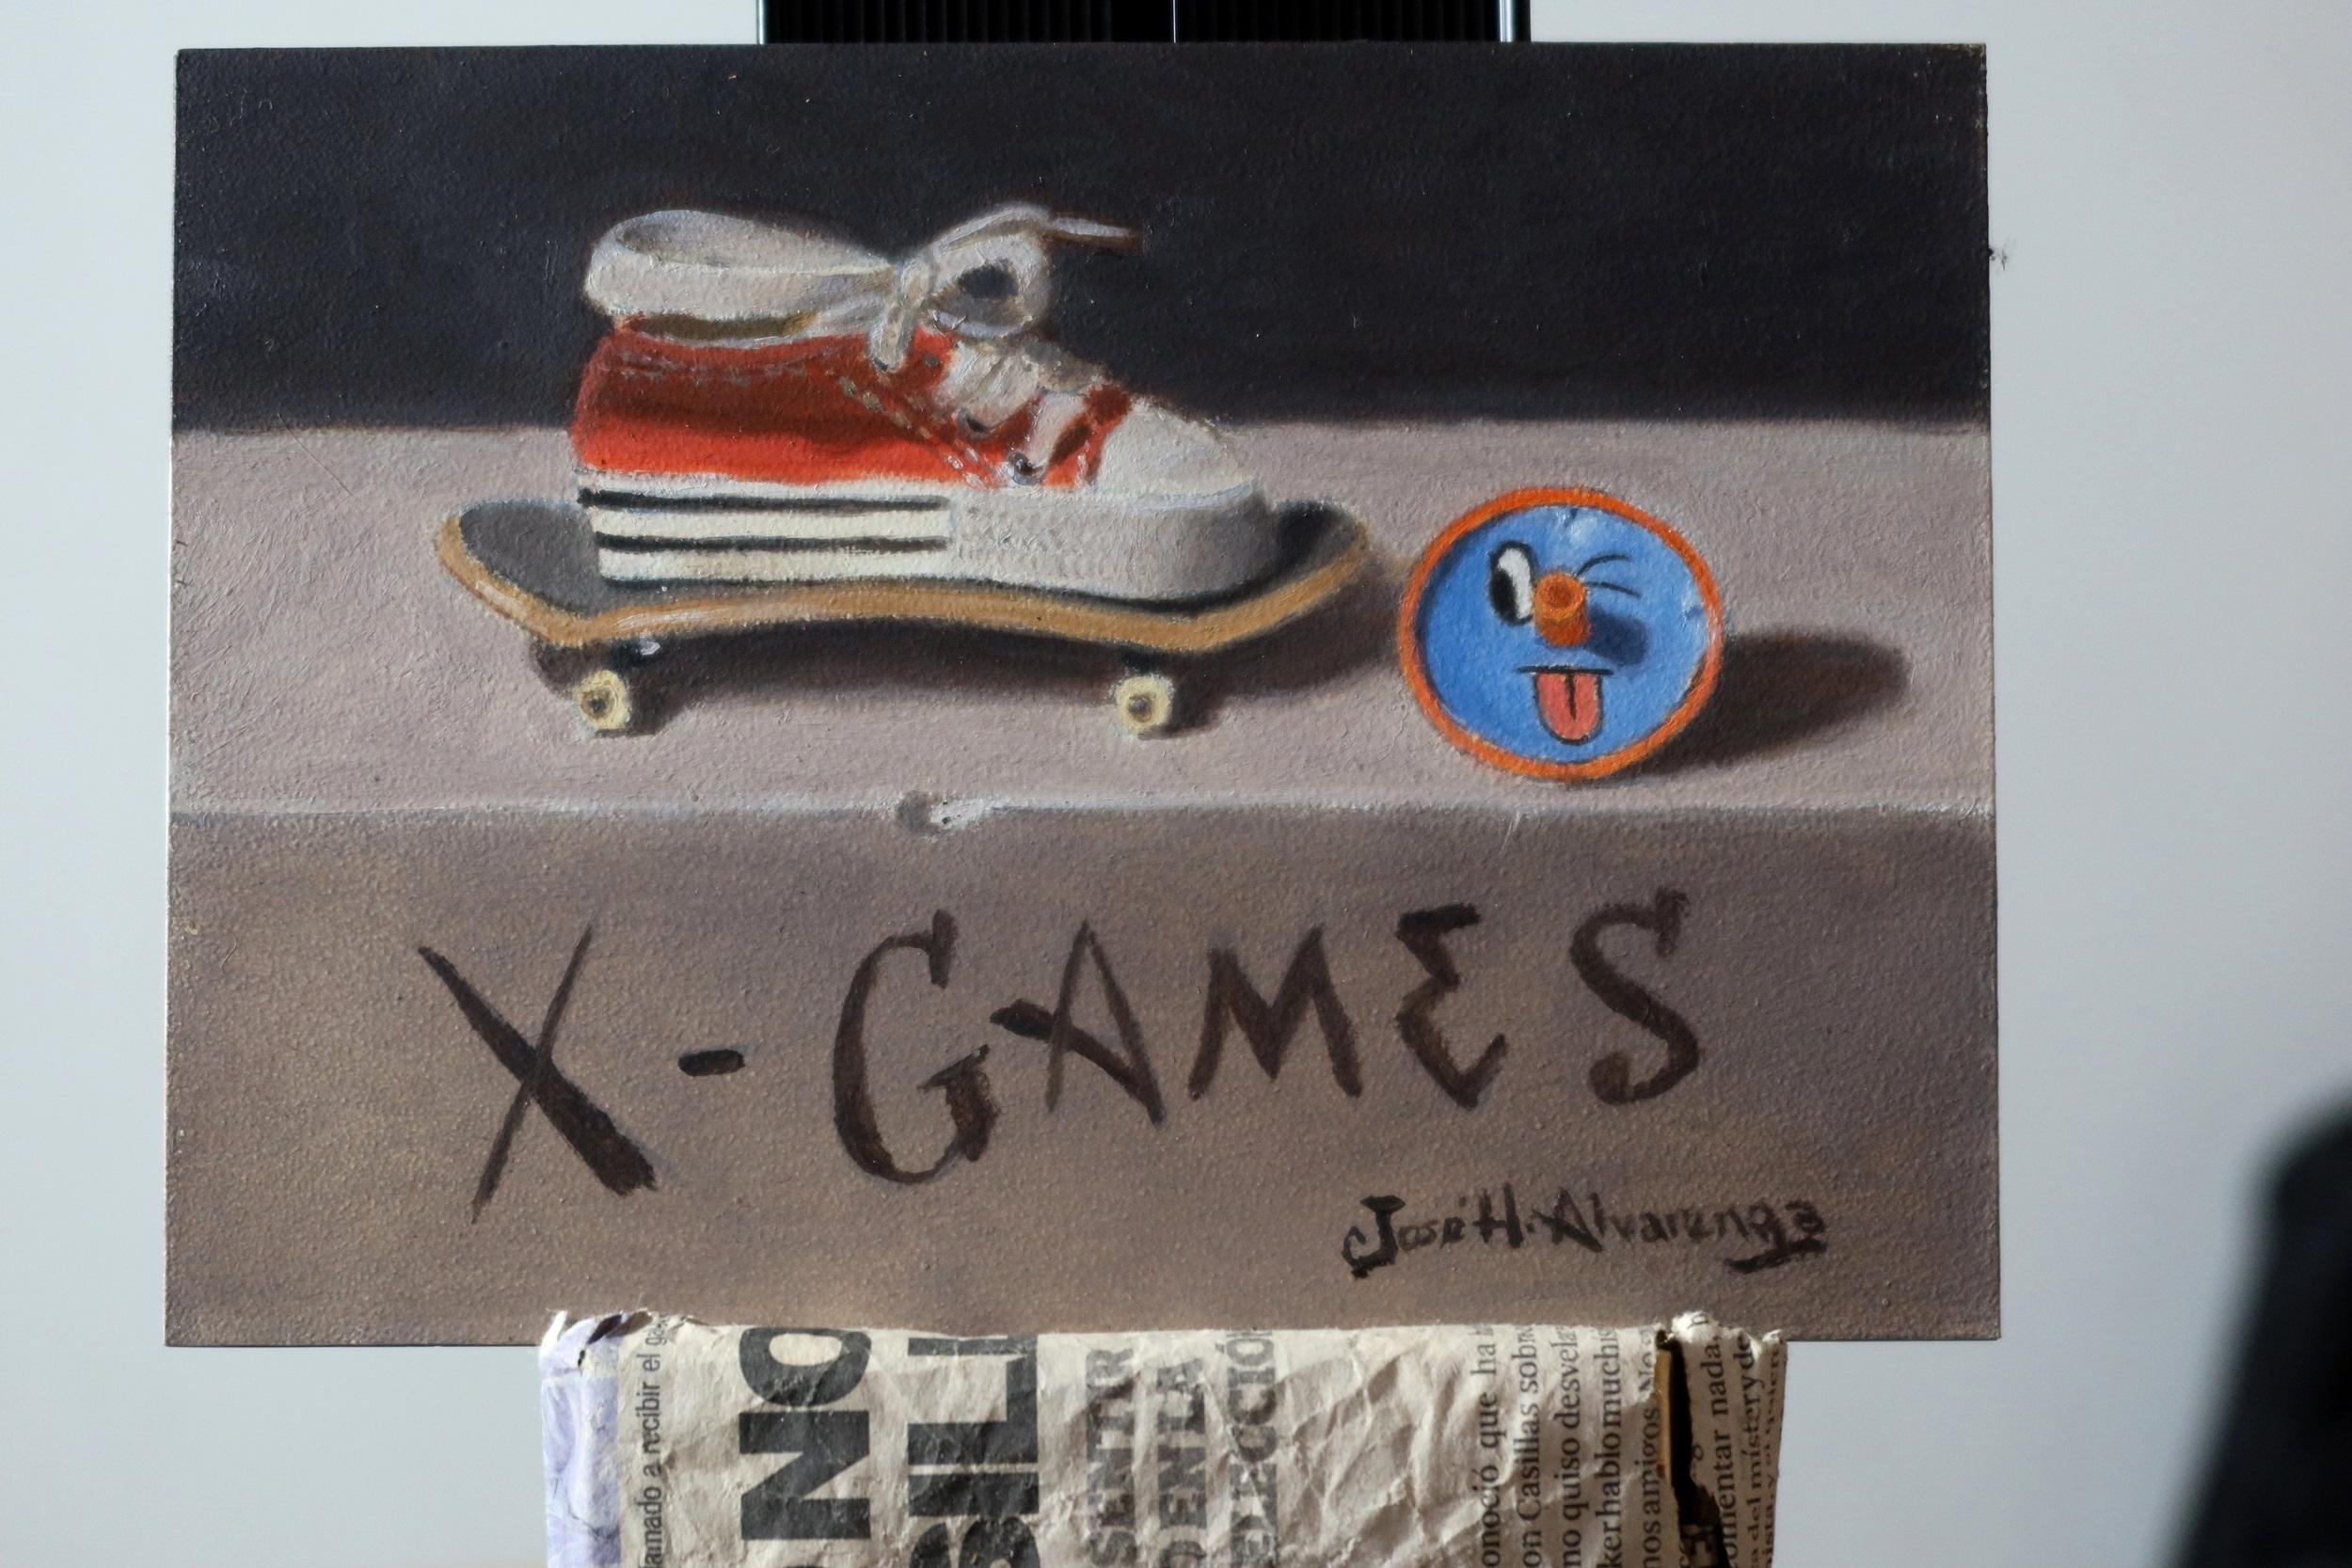 <p>Kommentare des Künstlers<br />Der Künstler Jose H. Alvarenga zeigt ein Bild von einem roten Schuh auf einem Skateboard mit einem Spielzeug an der Seite. 